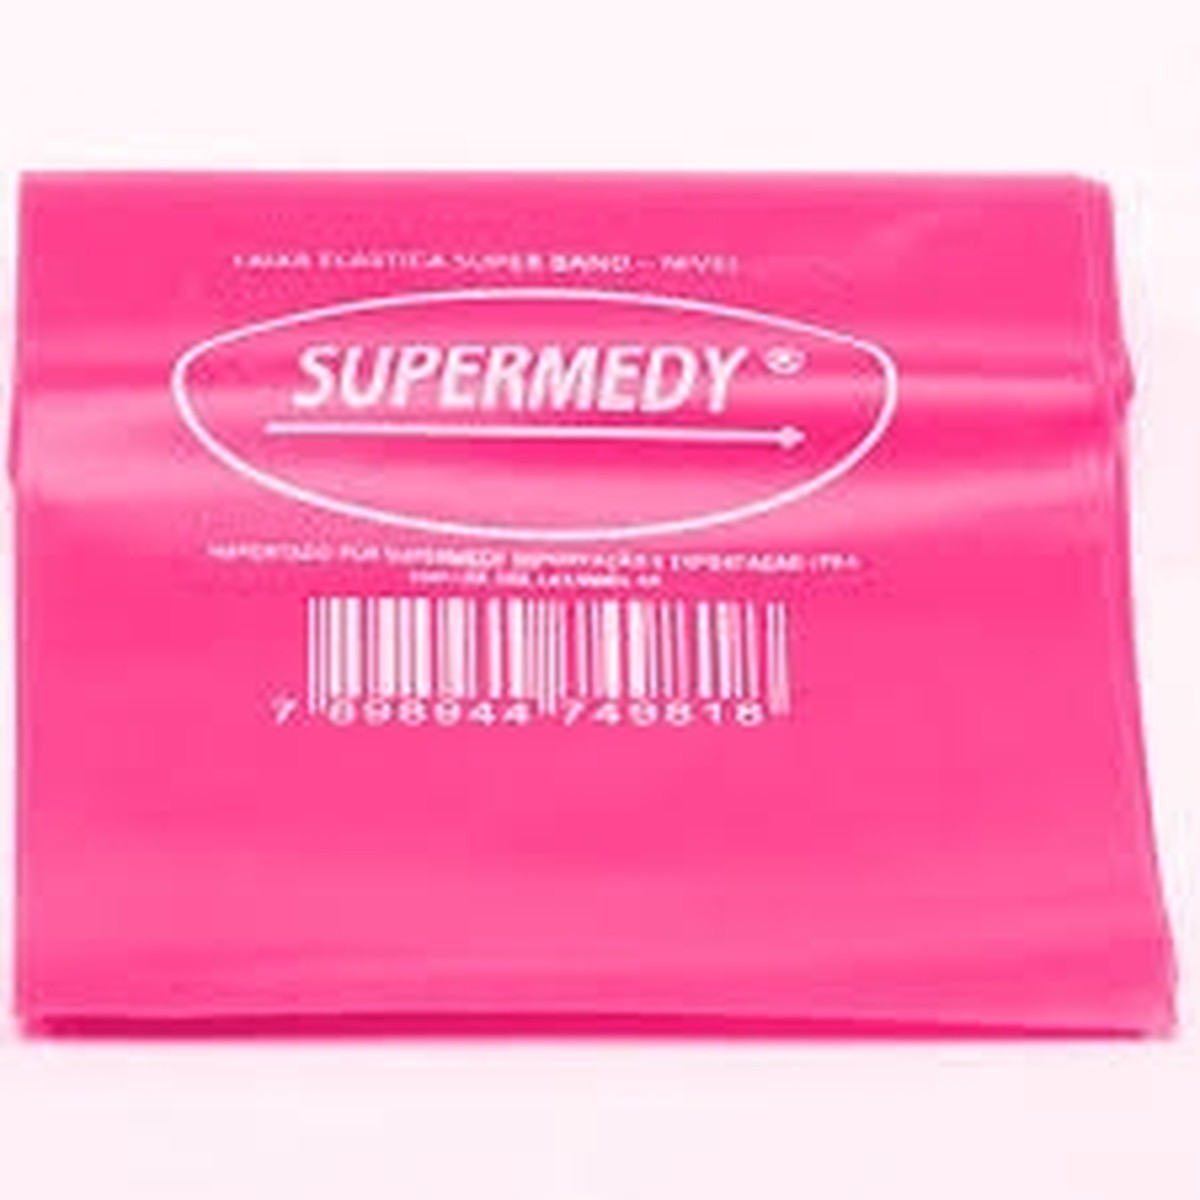 Foto do produto Faixa Super Band elástica nível médio (rosa)